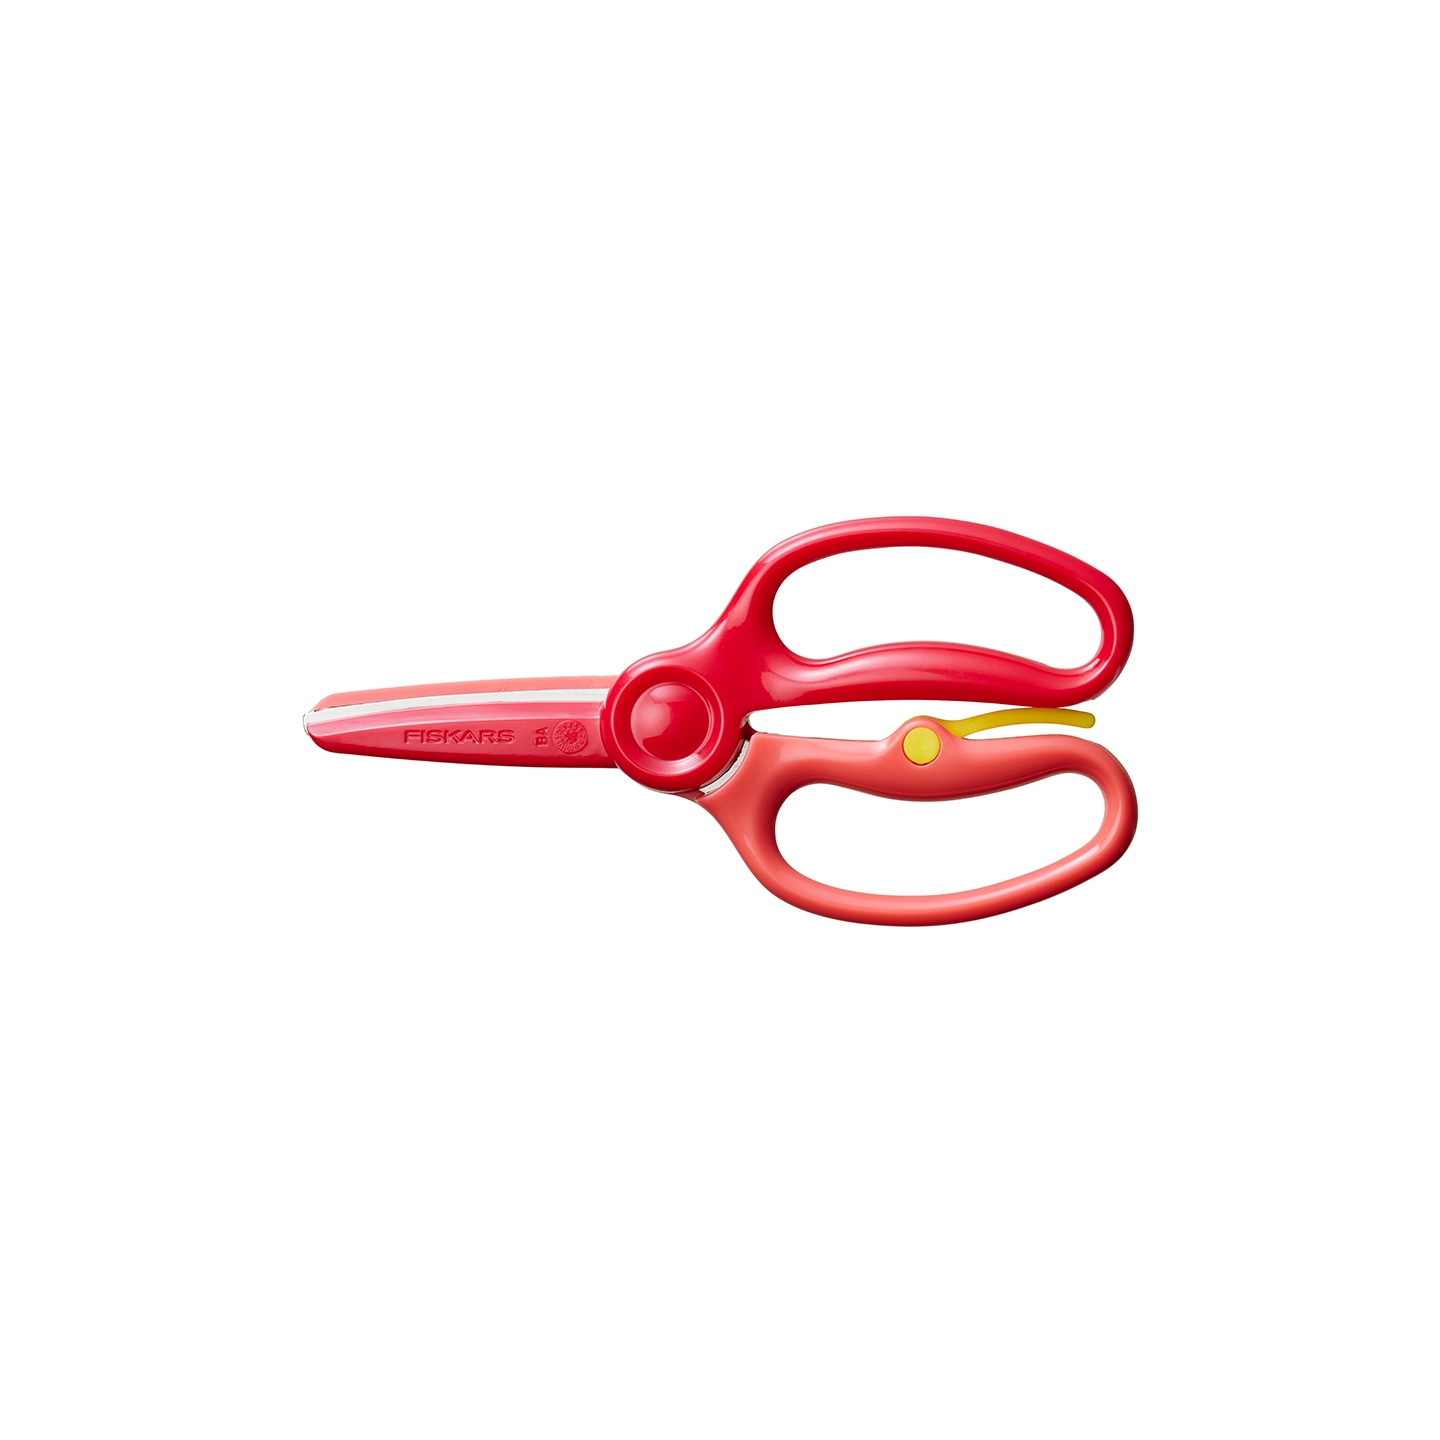 Fiskars Preschool Training Scissors - Left/Right - Metal - Blunted Tip